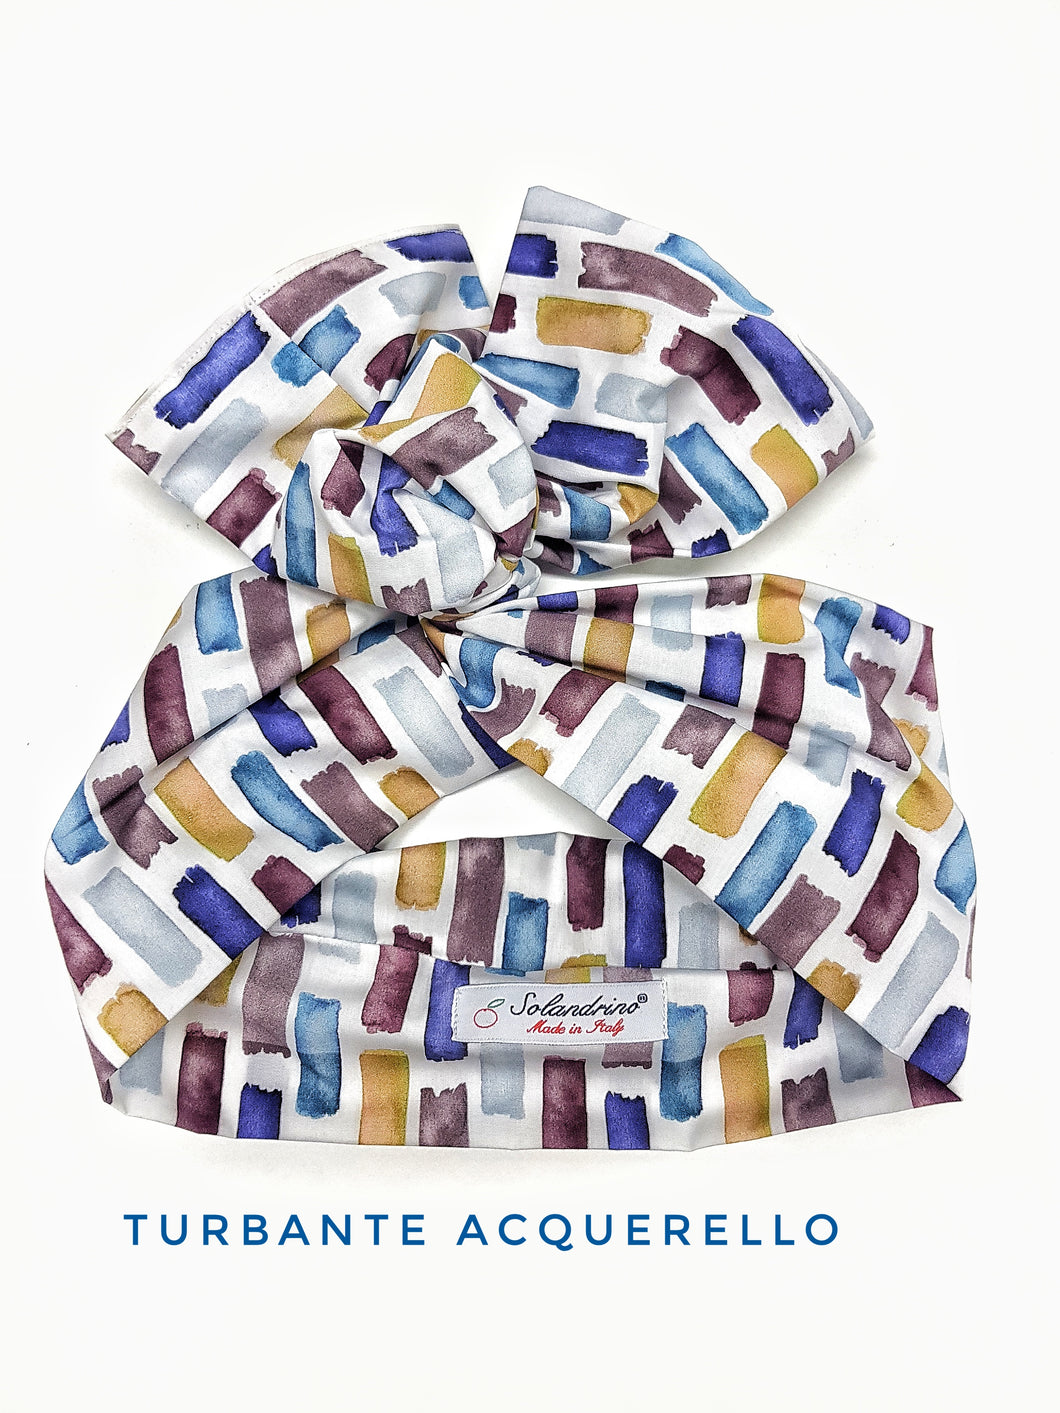 Turbante fantasia acquerello neri Fashion fascia capelli in cotone design  hairband Made in Italy